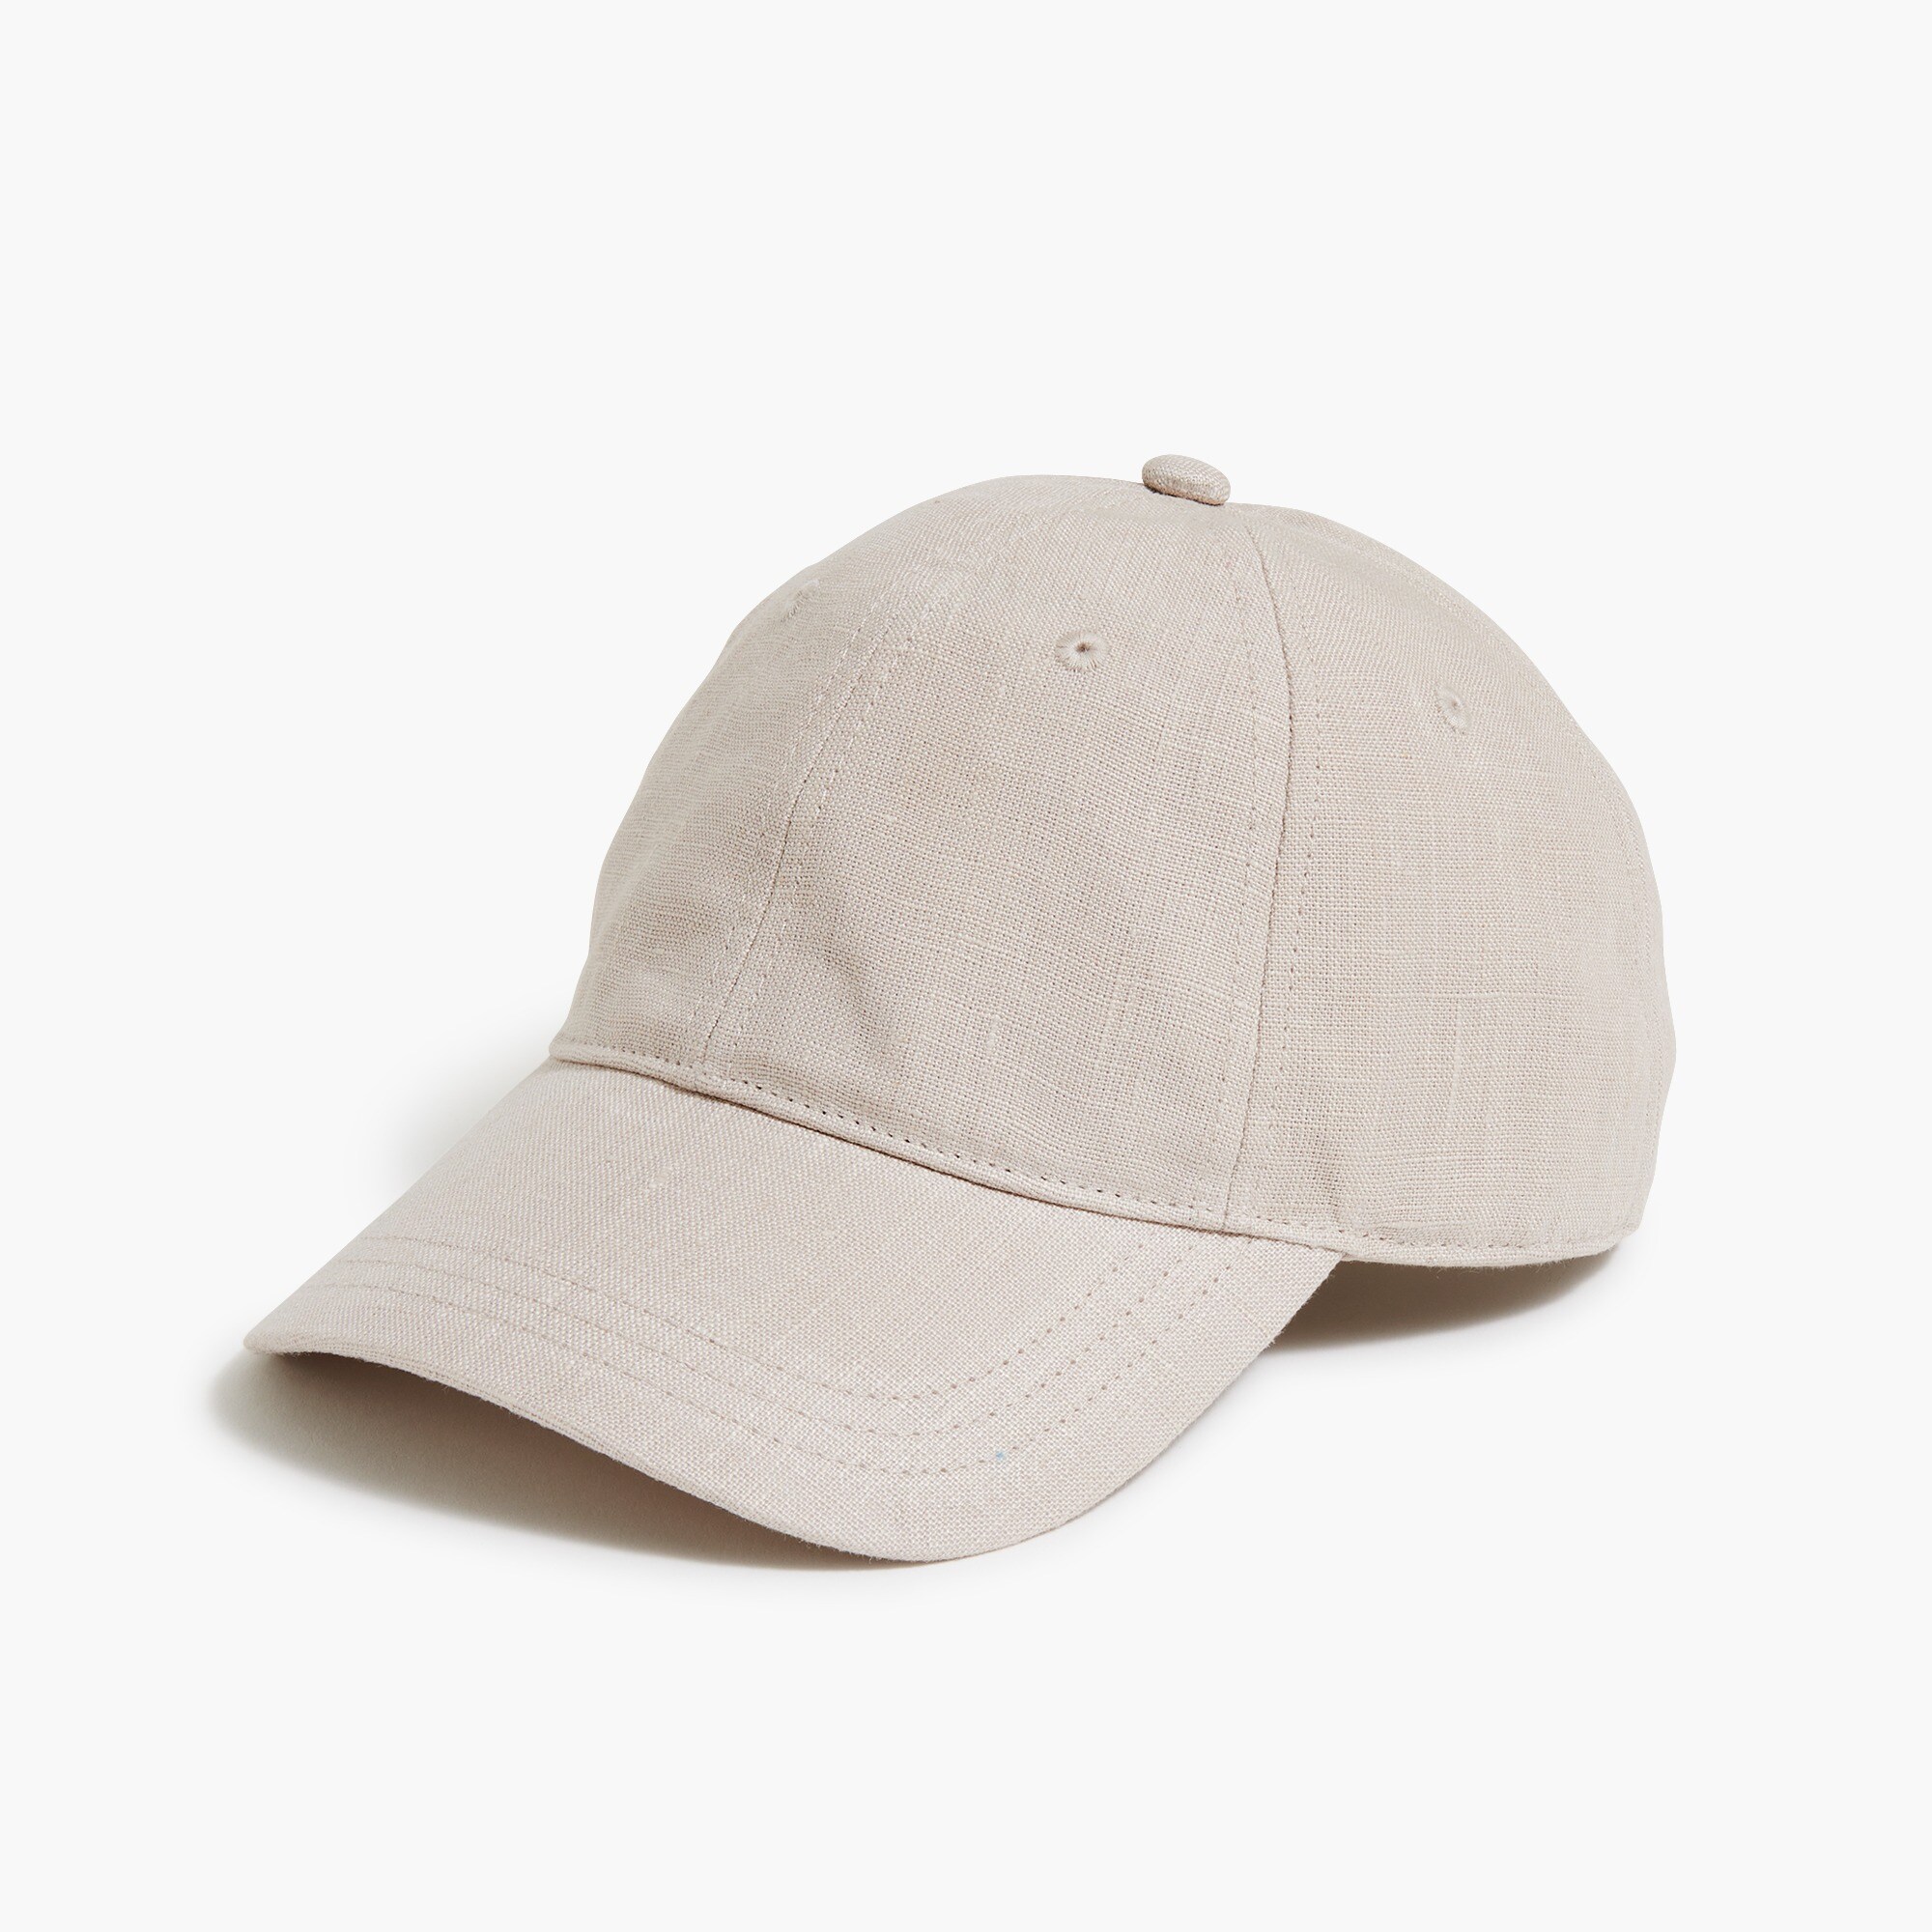  Linen-blend baseball cap